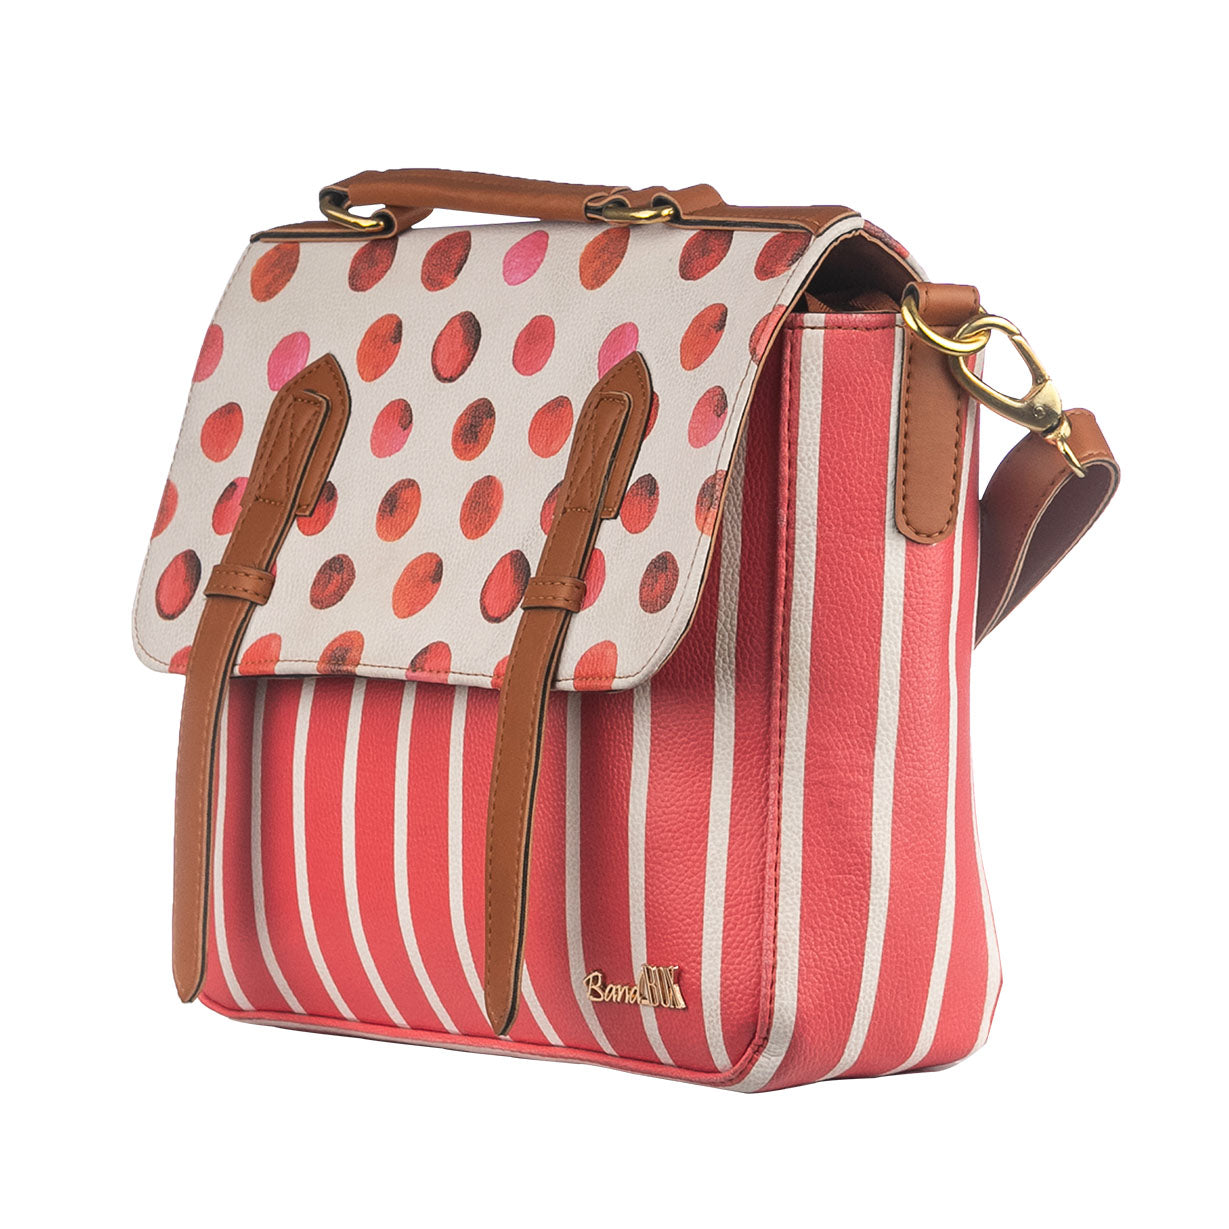 The Polka Stripe Satchel Bag